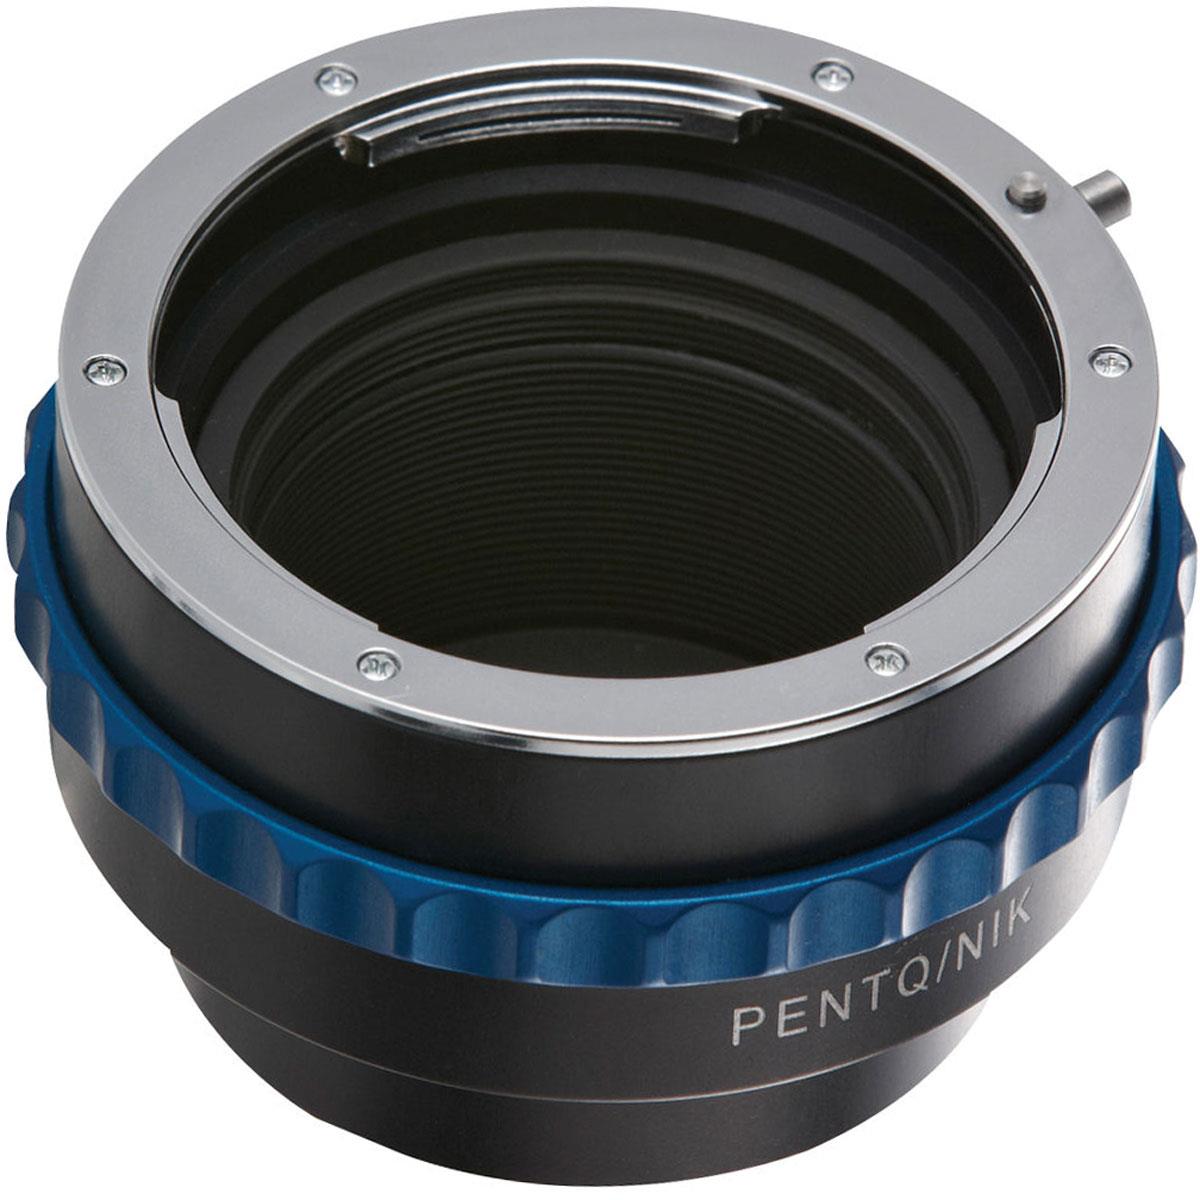 Image of Novoflex Adapter for Nikon Lenses to Pentax Q Cameras